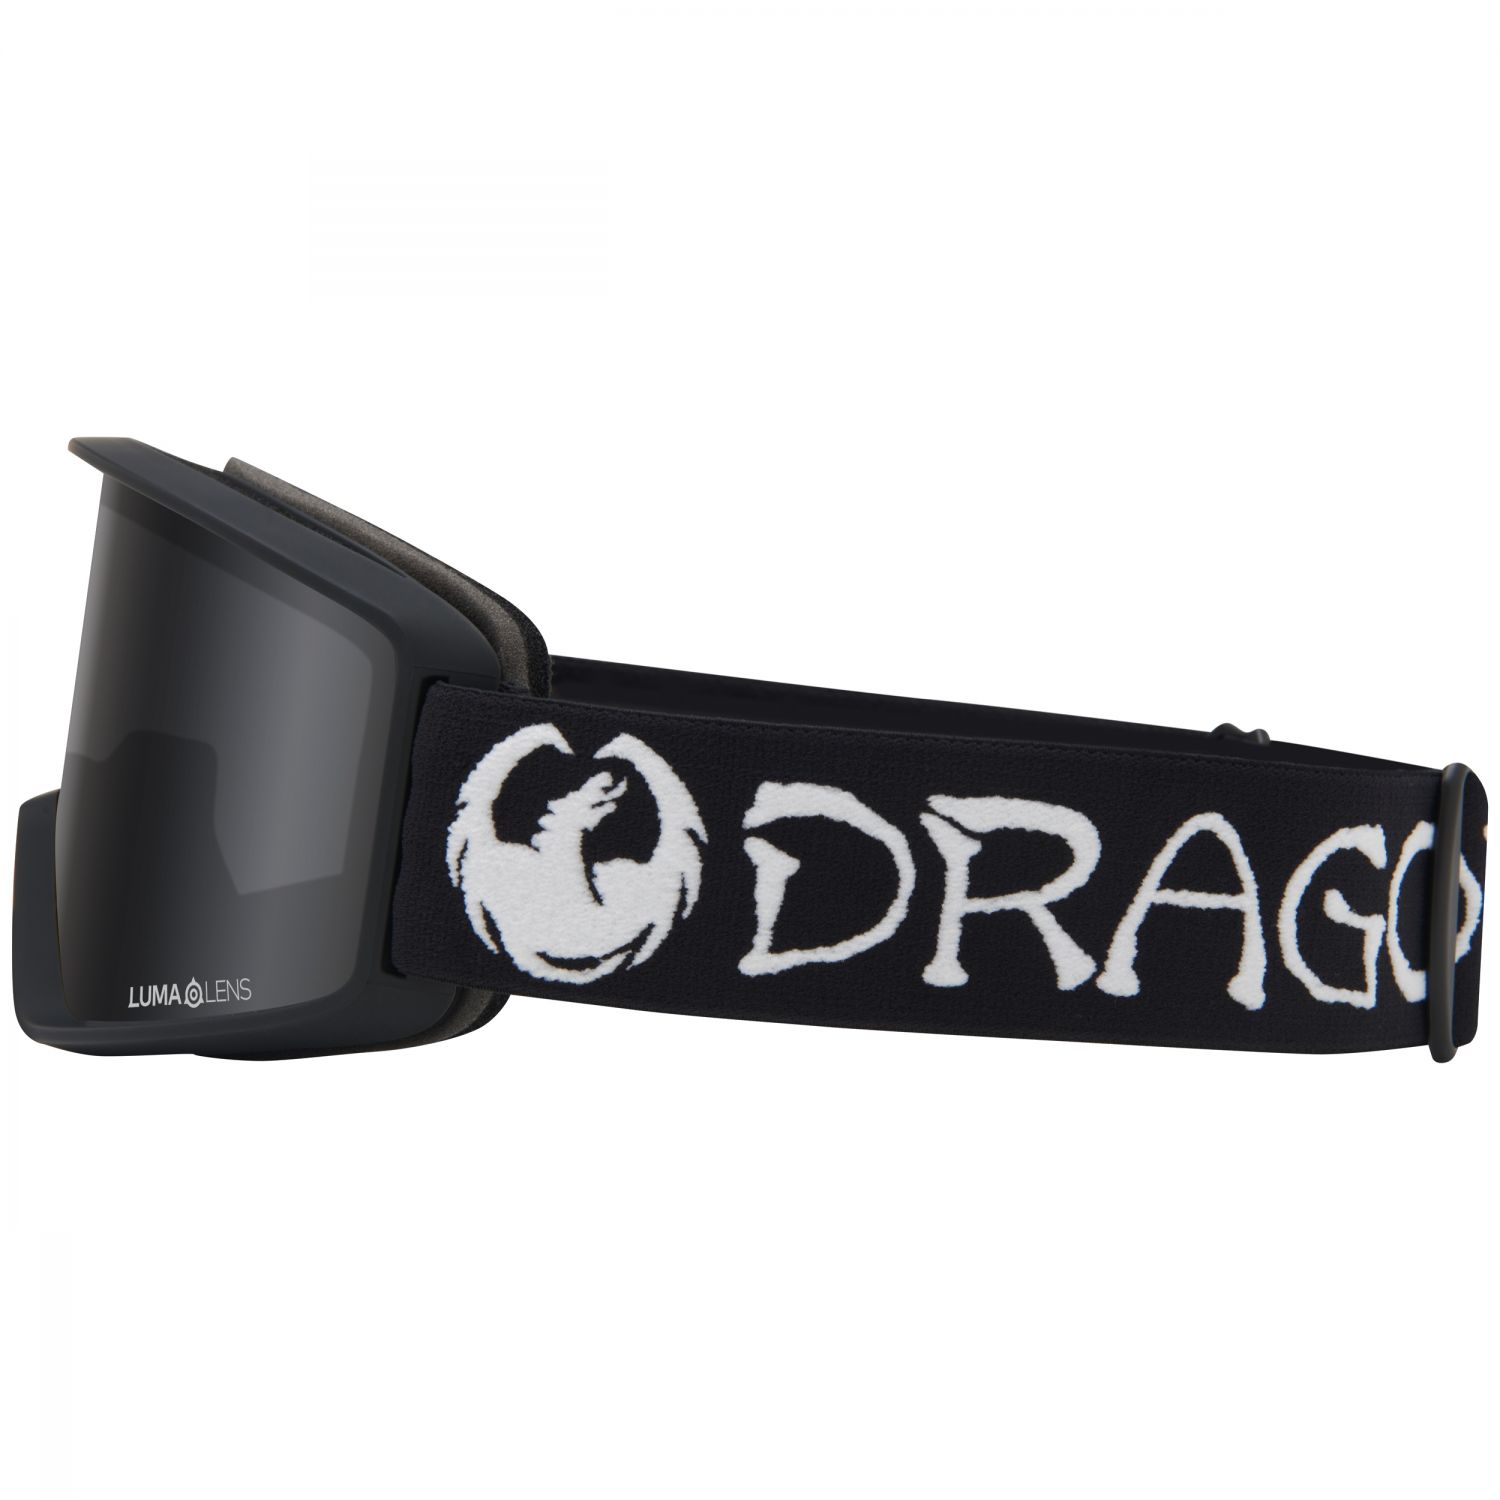 Dragon DXT OTG, Skibrille, classic black